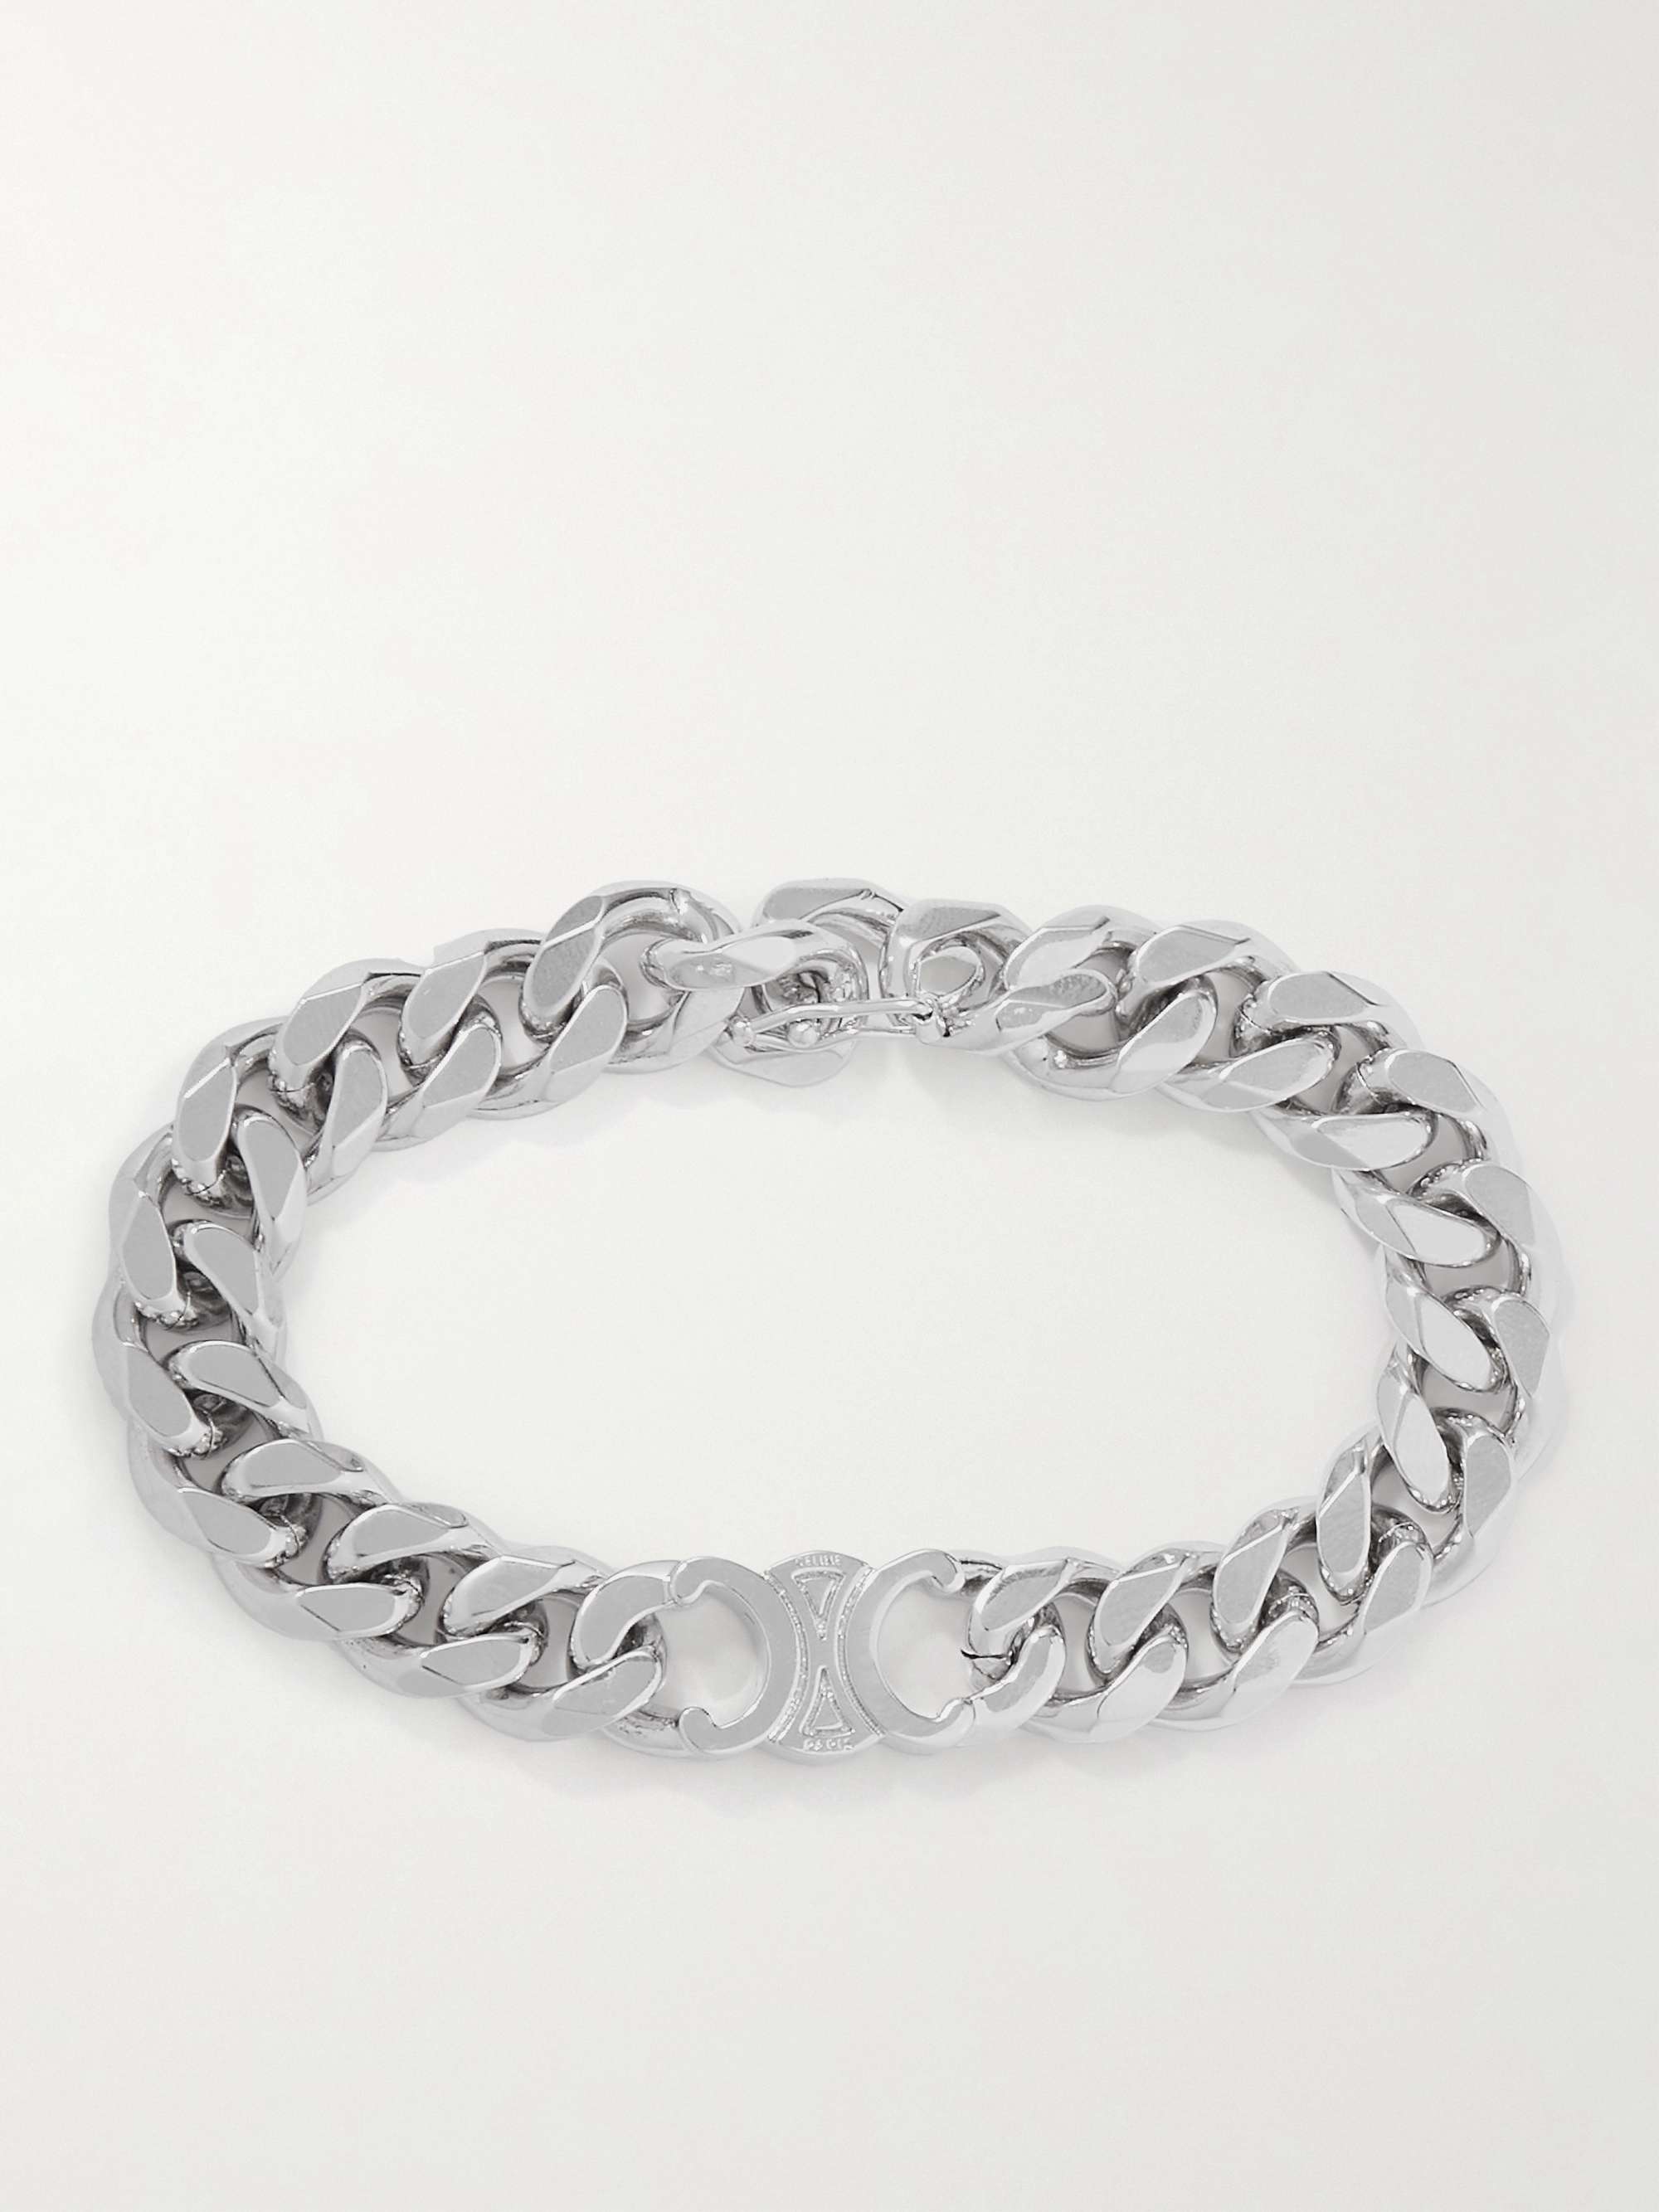 CELINE HOMME Triomphe Silver-Tone Chain Bracelet for Men | MR PORTER